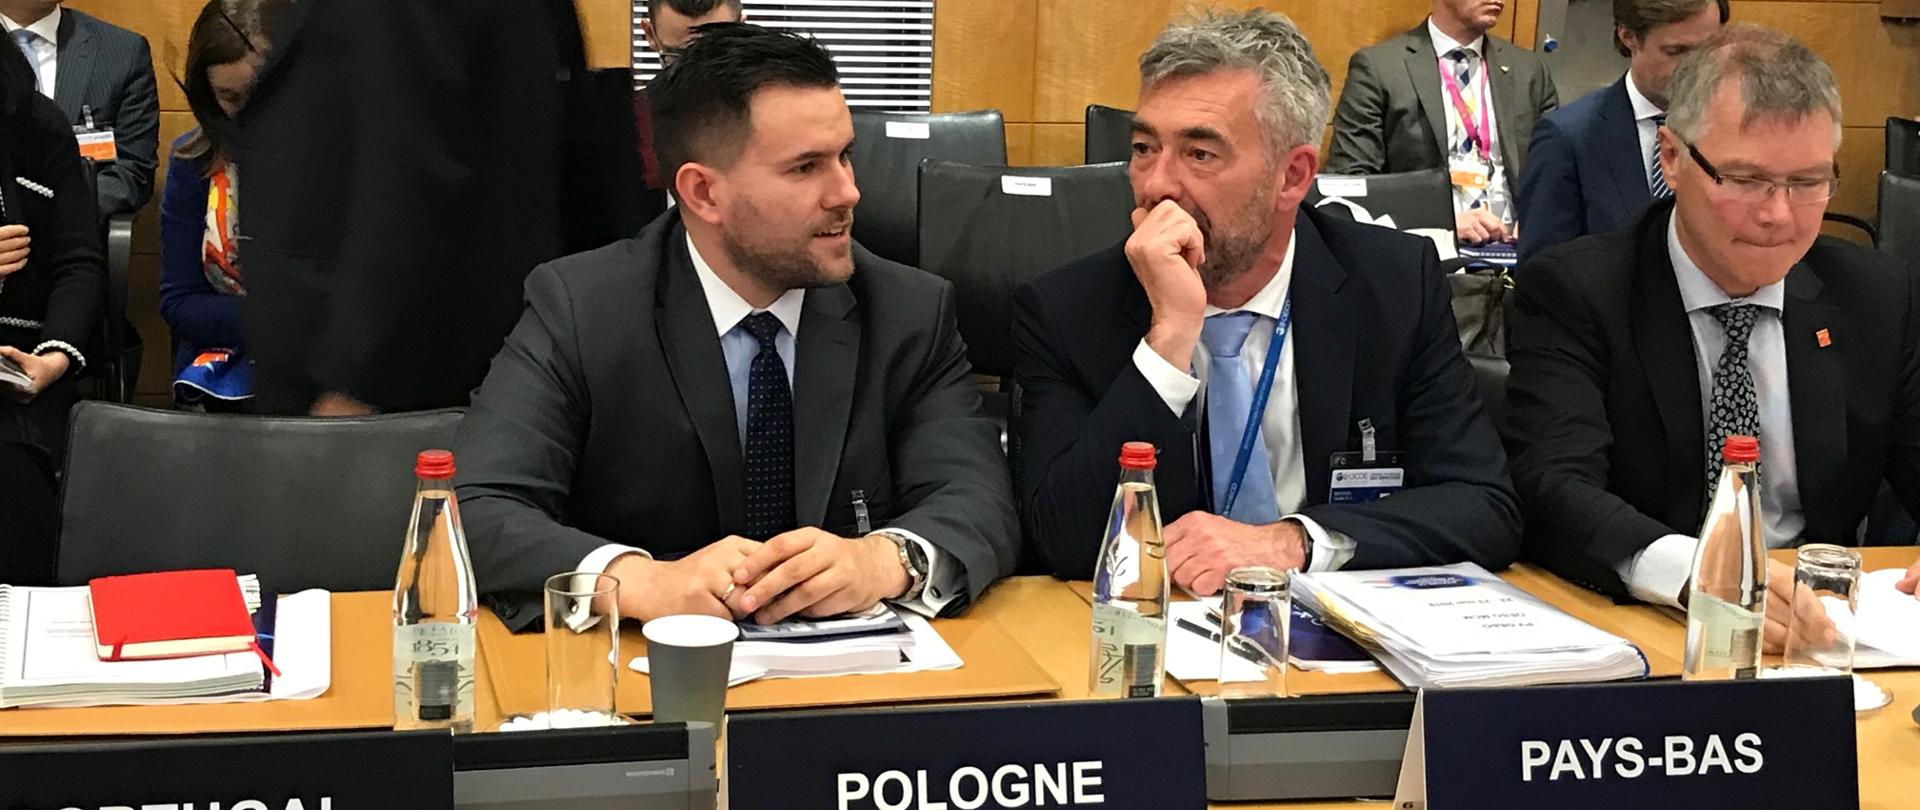 Zastępca dyrektora Departamentu Systemu Podatkowego Filip Majdowski podczas posiedzenia OECD rozmawia z delegatem z Belgi